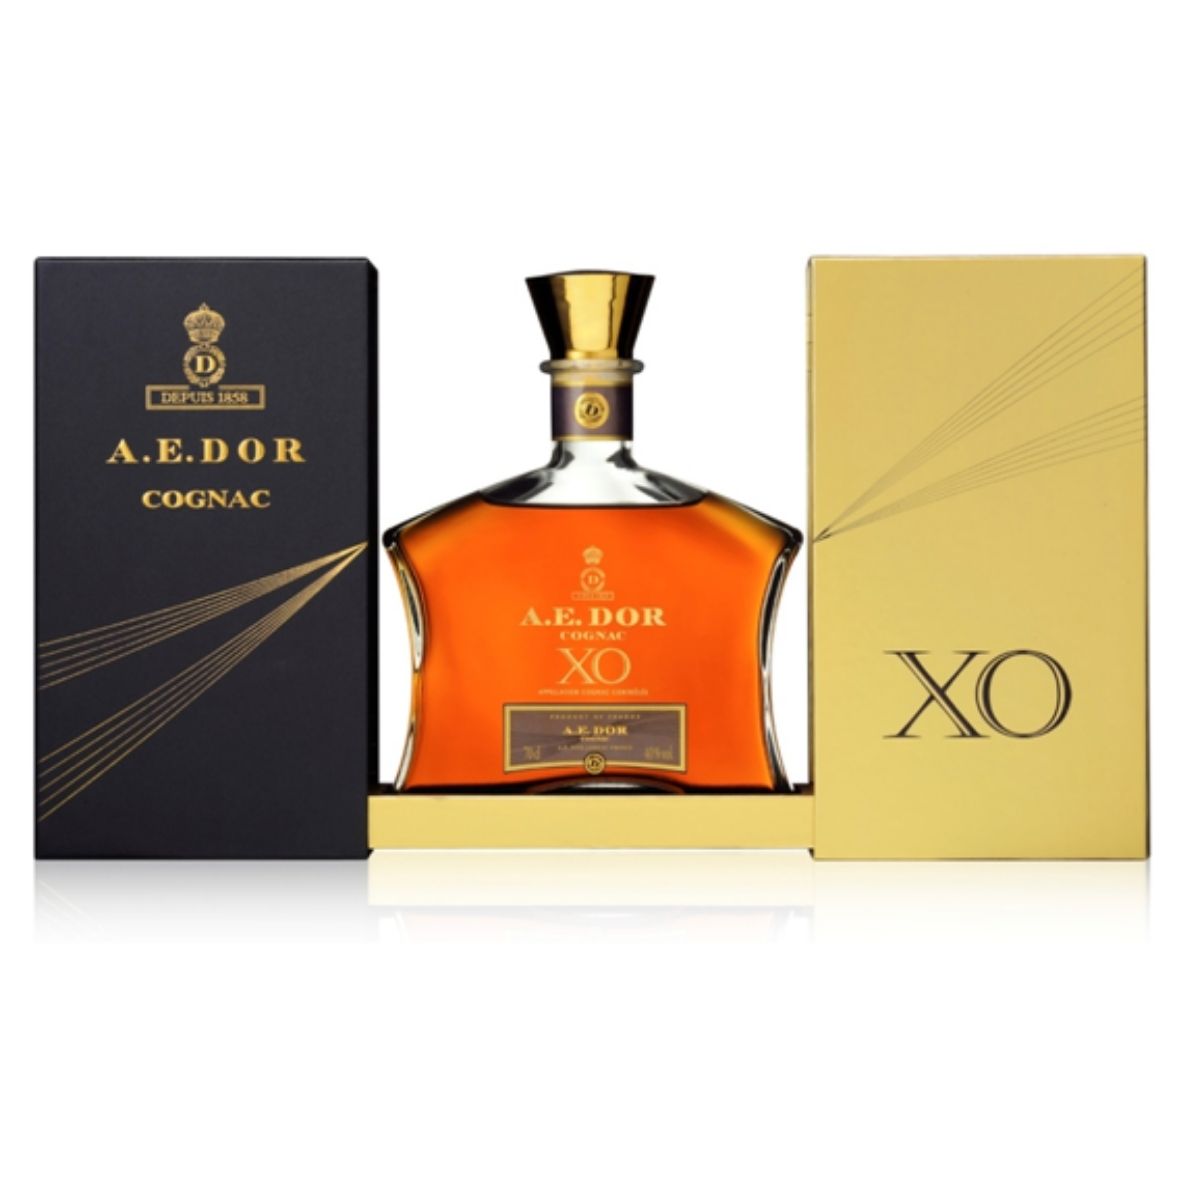 A. E. Dor Cognac XO